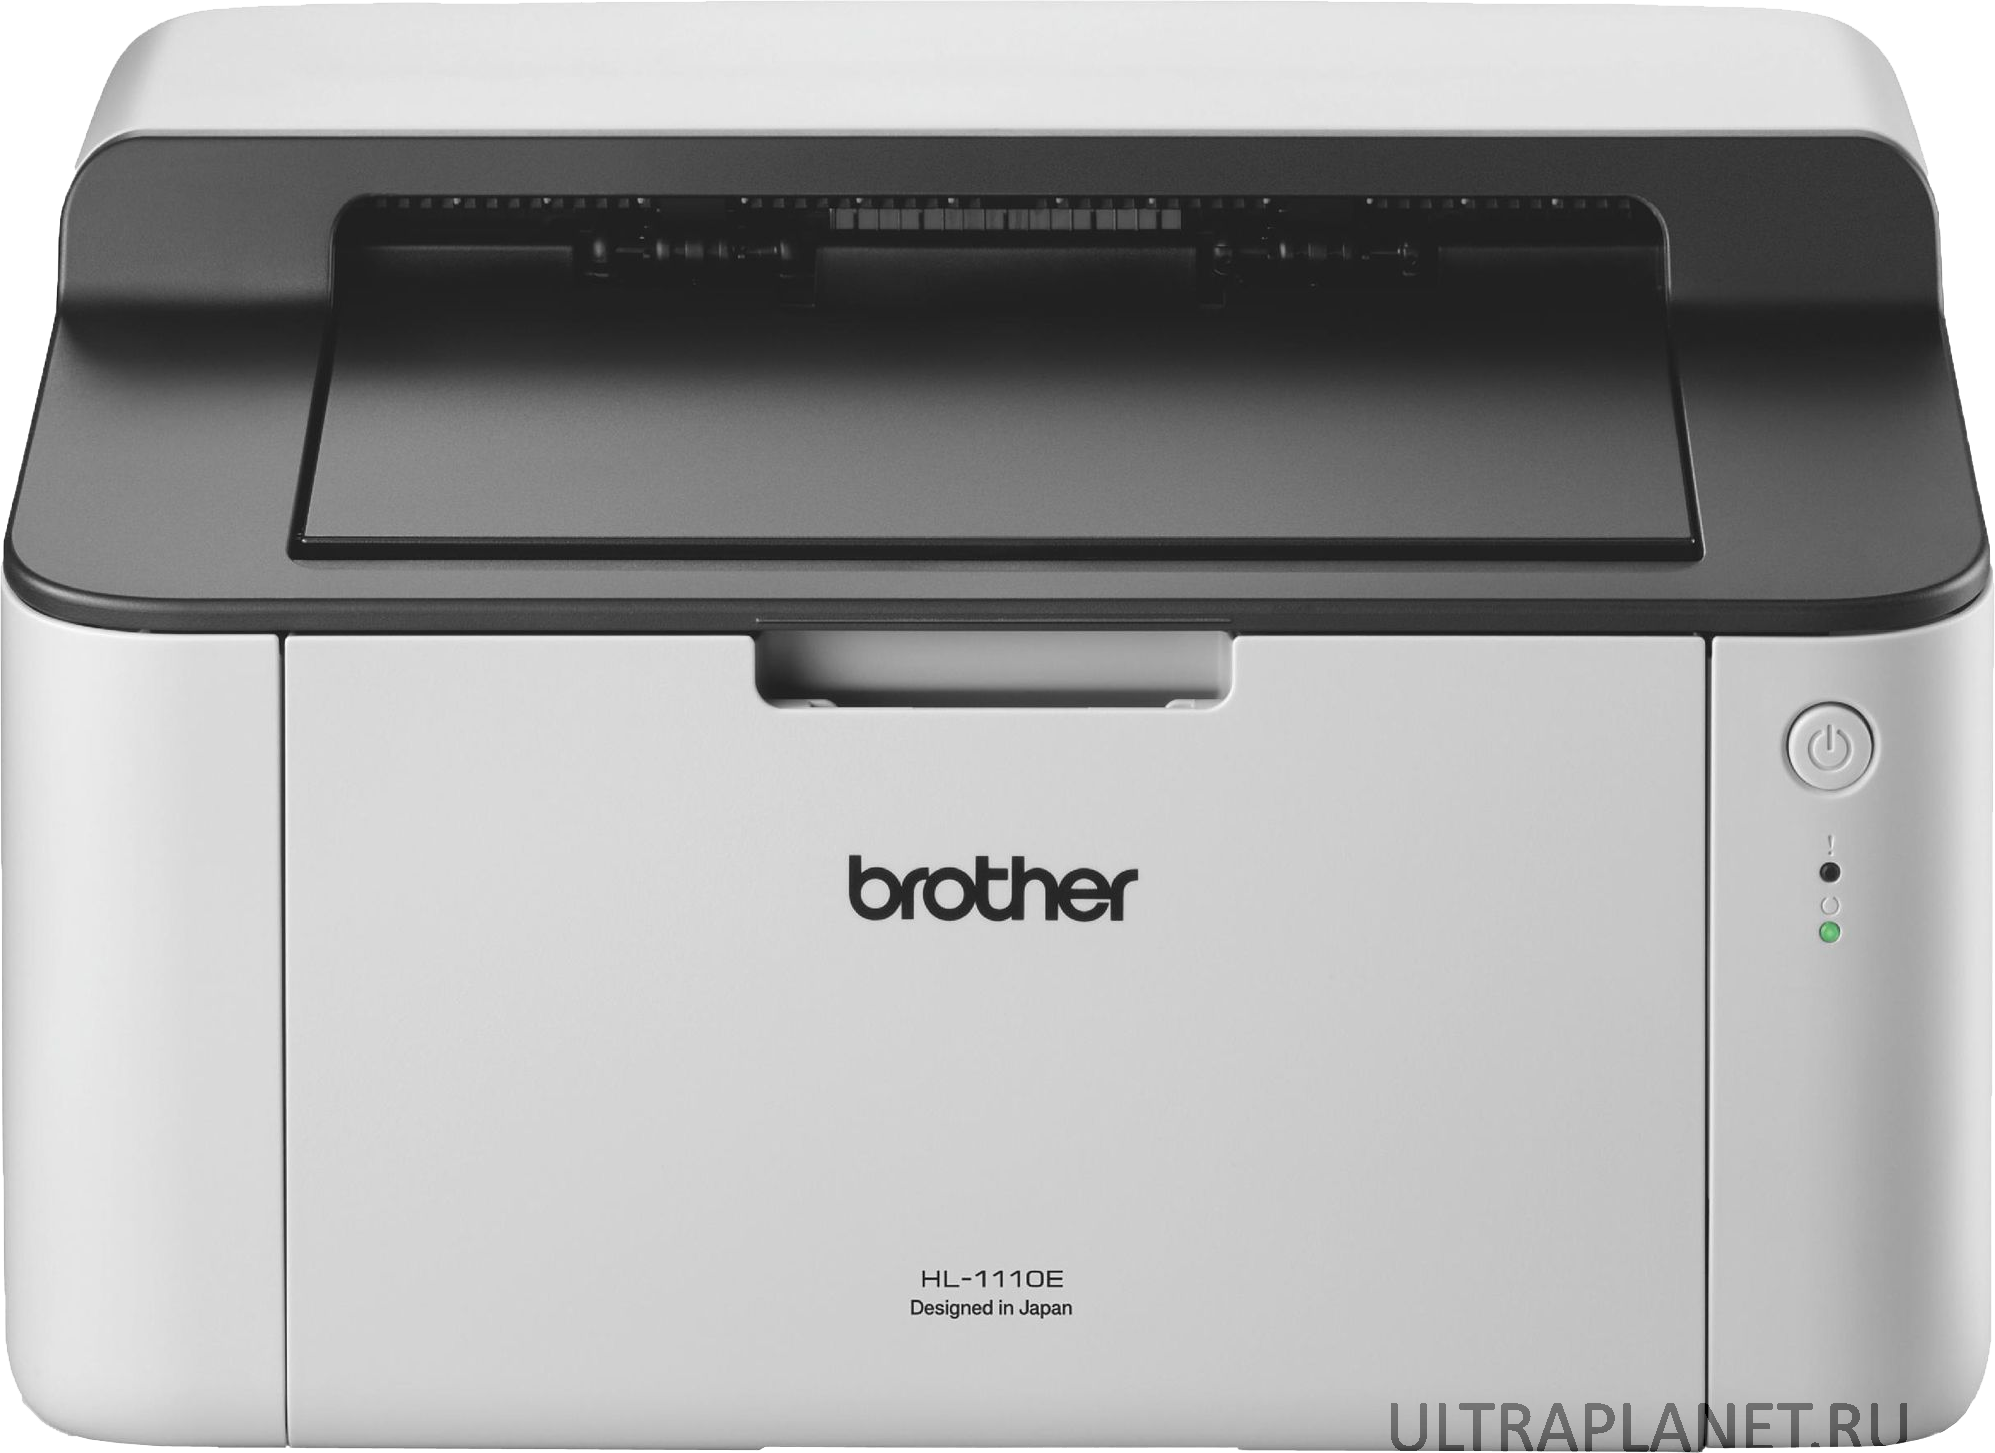 Купить принтер в м видео. Принтер лазерный brother 1110r. Принтер Бразер hl 1110r. Принтер лазерный brother hl-1110r (hl1110r1). Принтер brother hl 1210w.